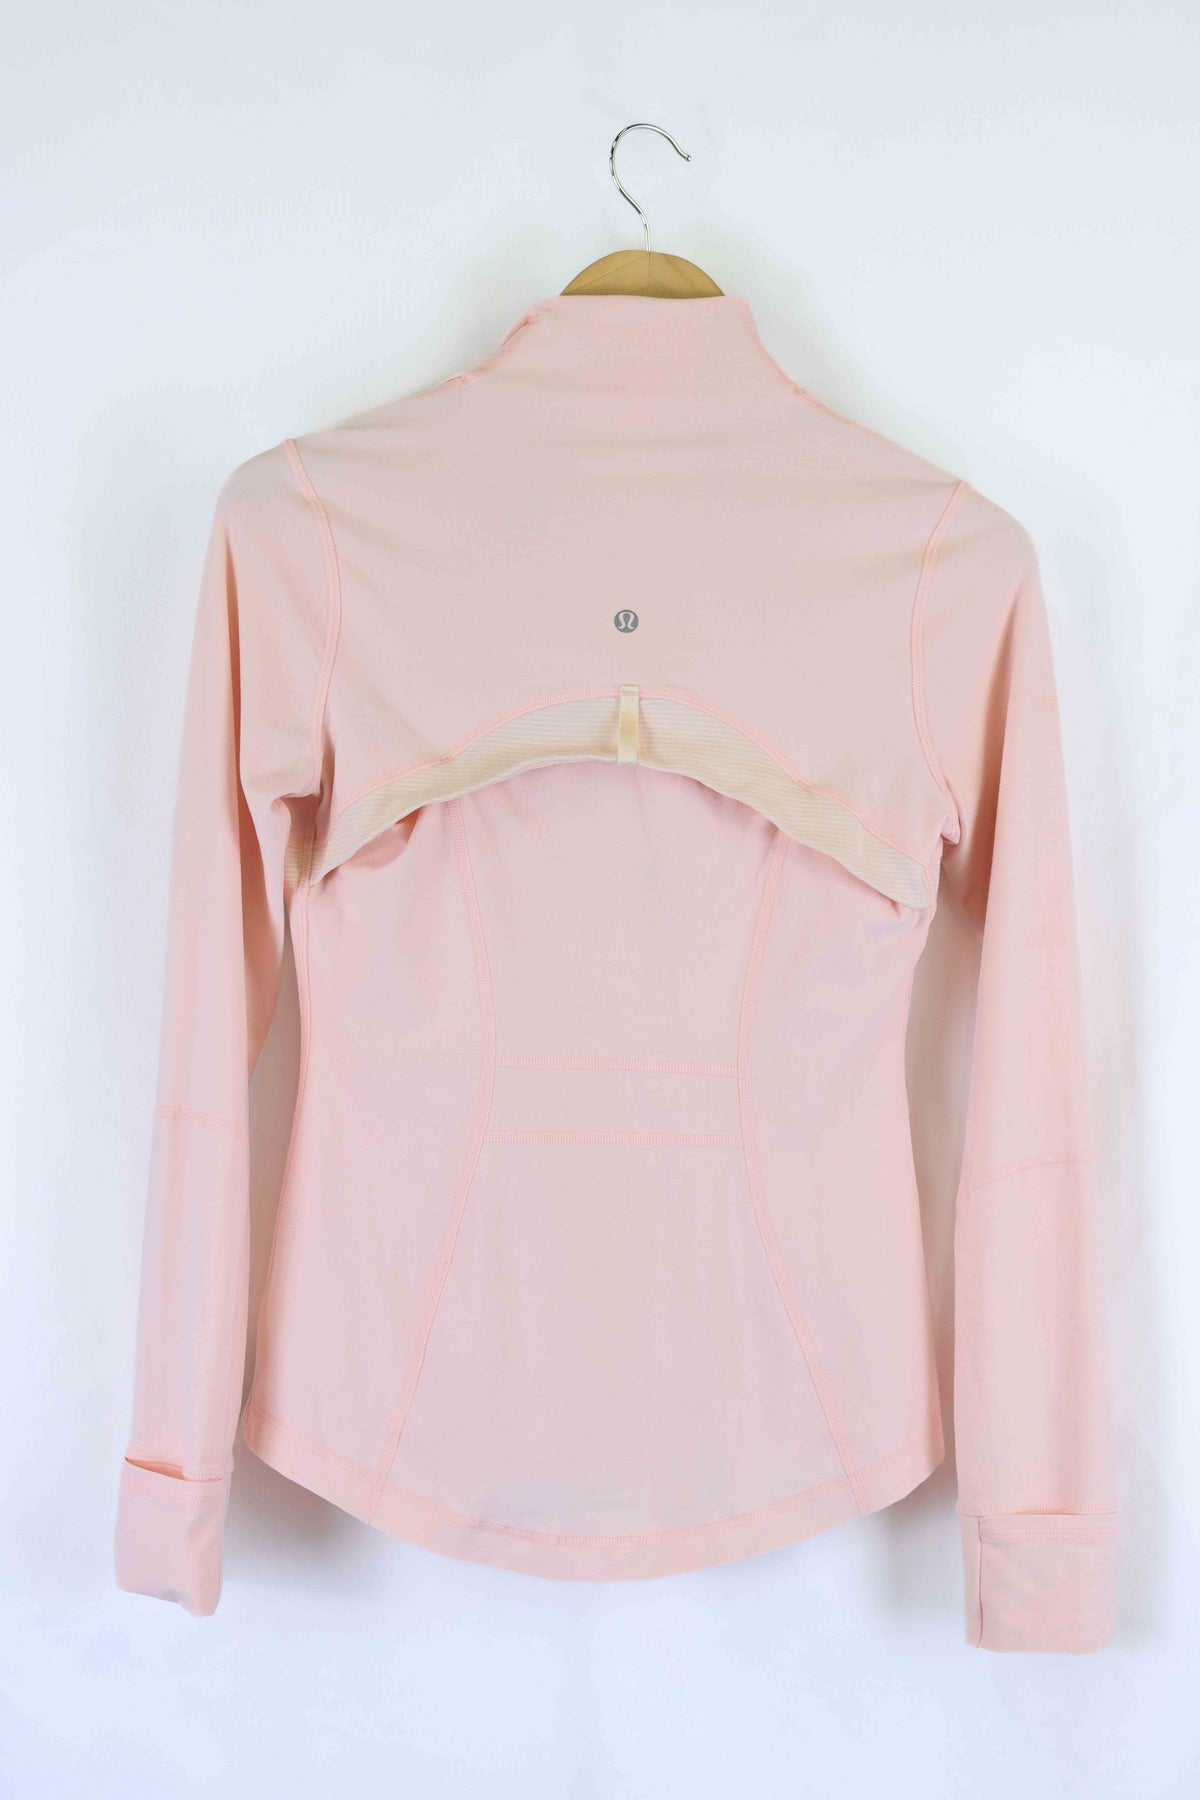 Lululemon Pink Jacket XL